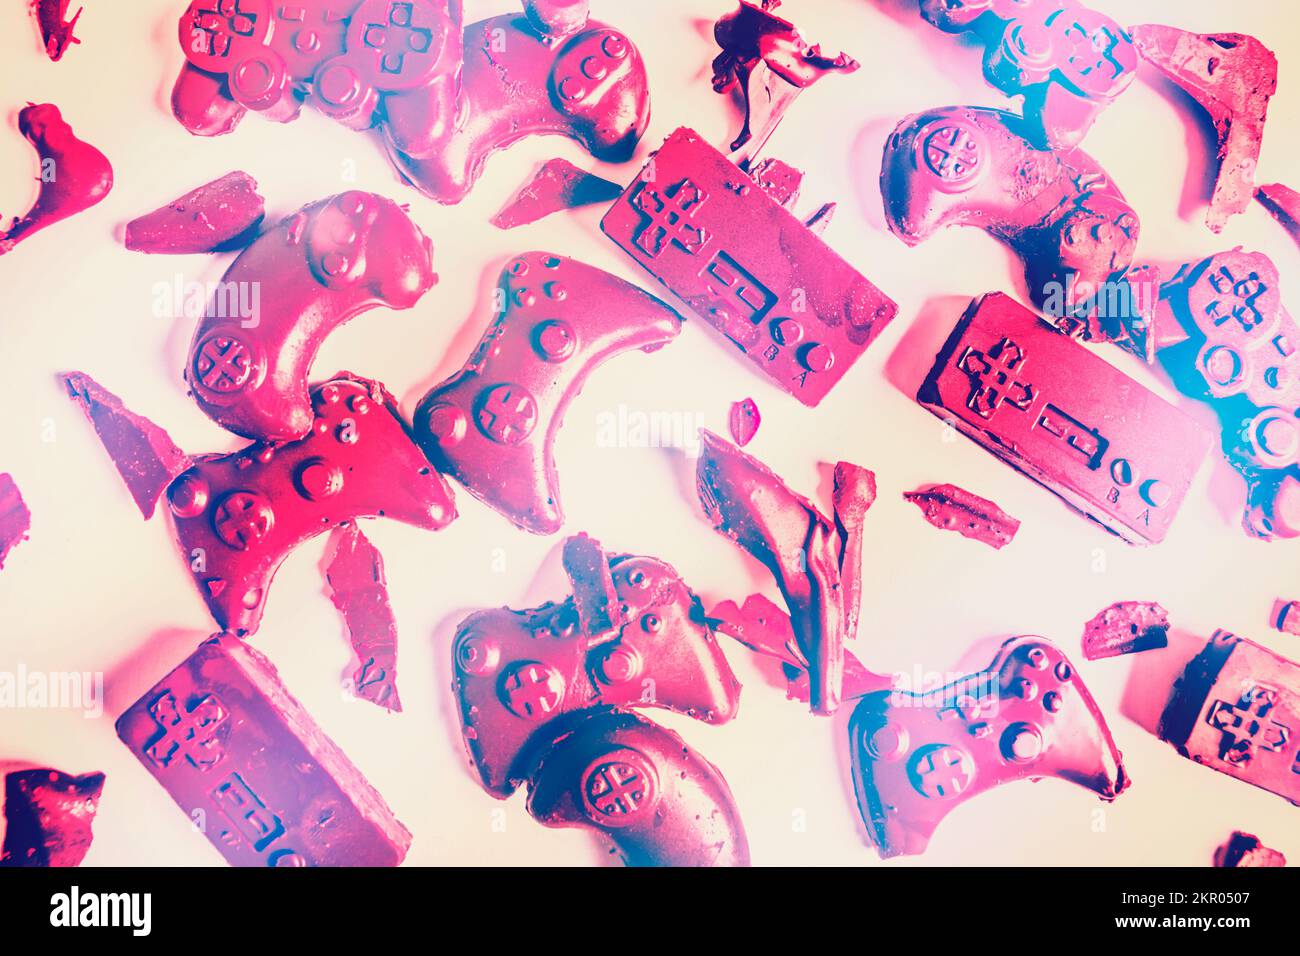 Pop art diffusion de la gloire du jeu rétro avec des gamepads sugarcraft des concours de bonbons de console Banque D'Images